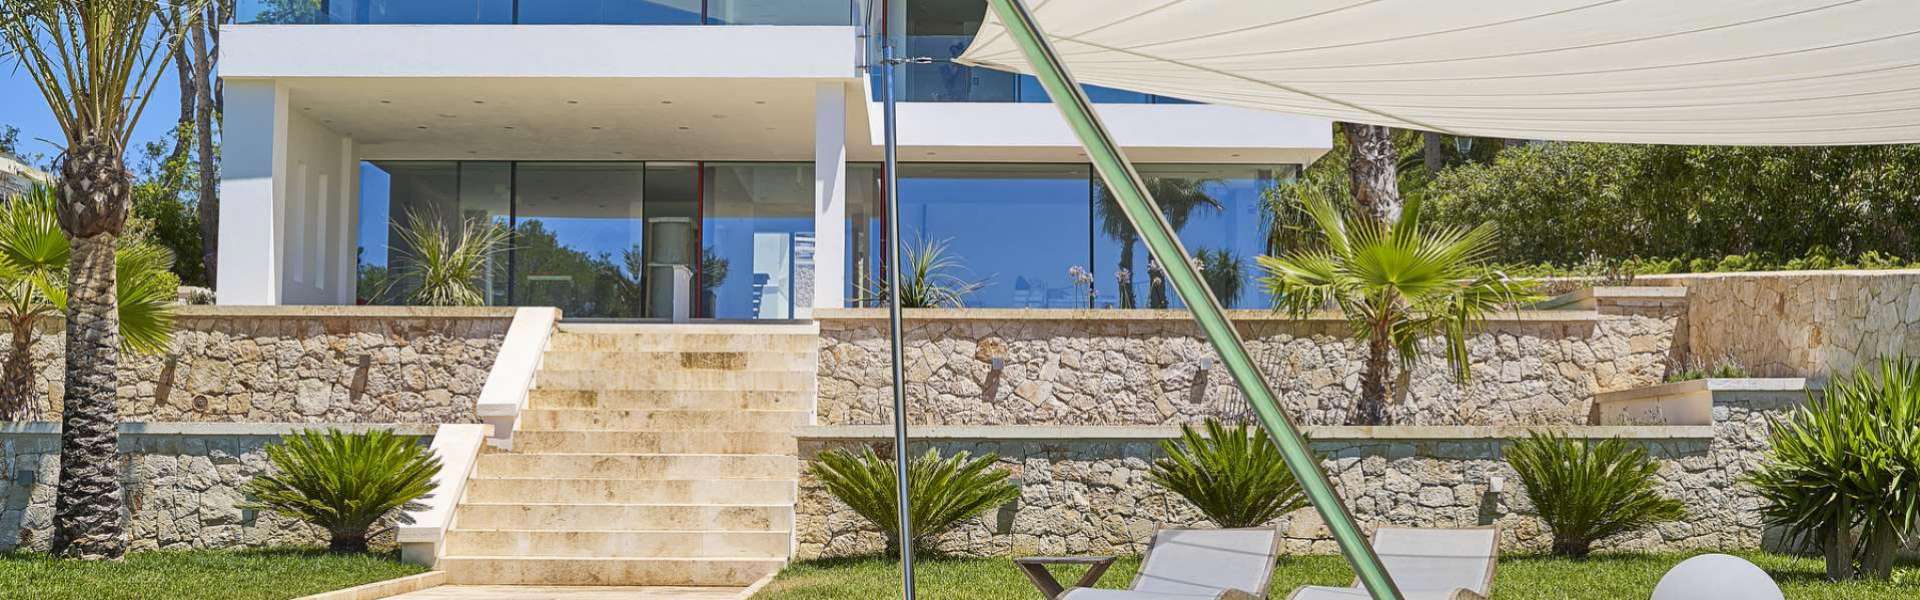 Porto Petro - Villa moderna con acceso al mar en ubicación expuesta